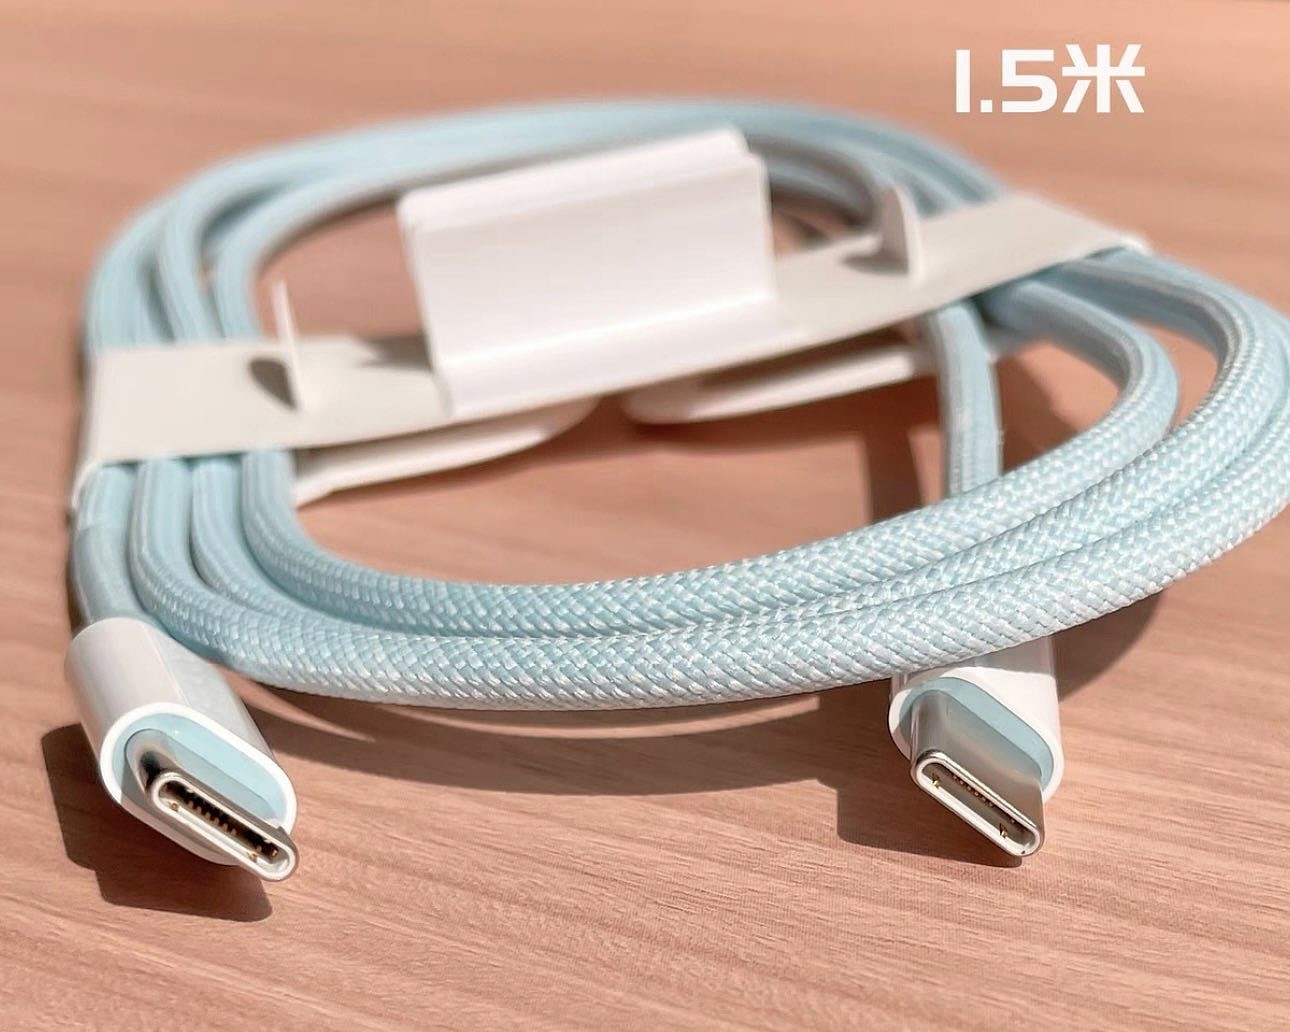 消息称苹果 iPhone 15 系列配备 1.5 米长双头 USB-C 线缆 - 4